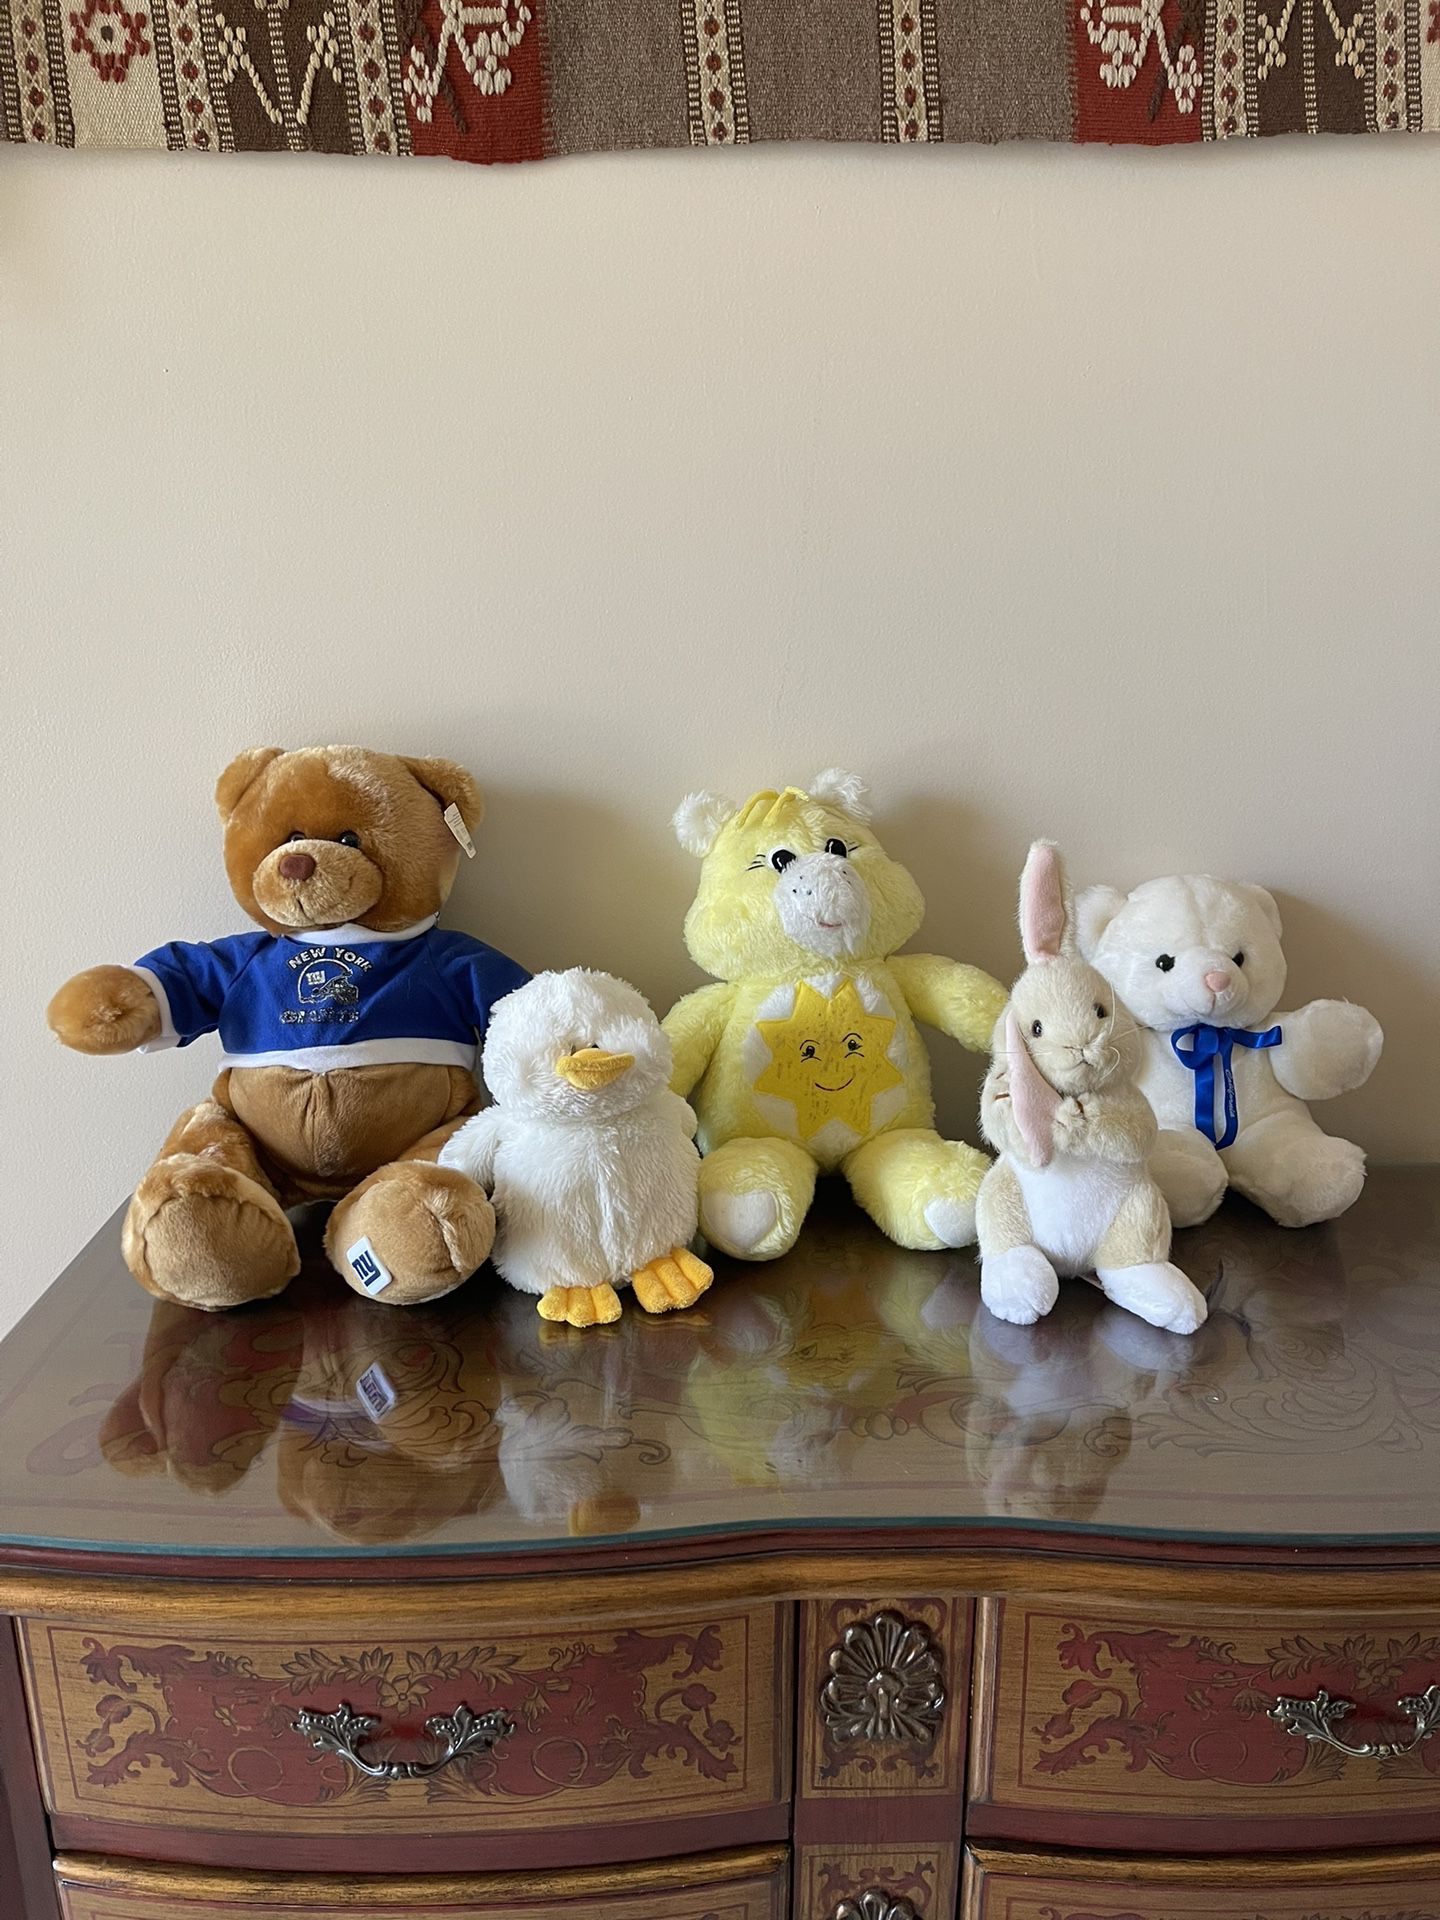 Vintage NFL Giants teddy bear With tags, Handmade Funshine Care bear, California Teddy Bear, Dakin Springtime Bunny, Webkinz Duck